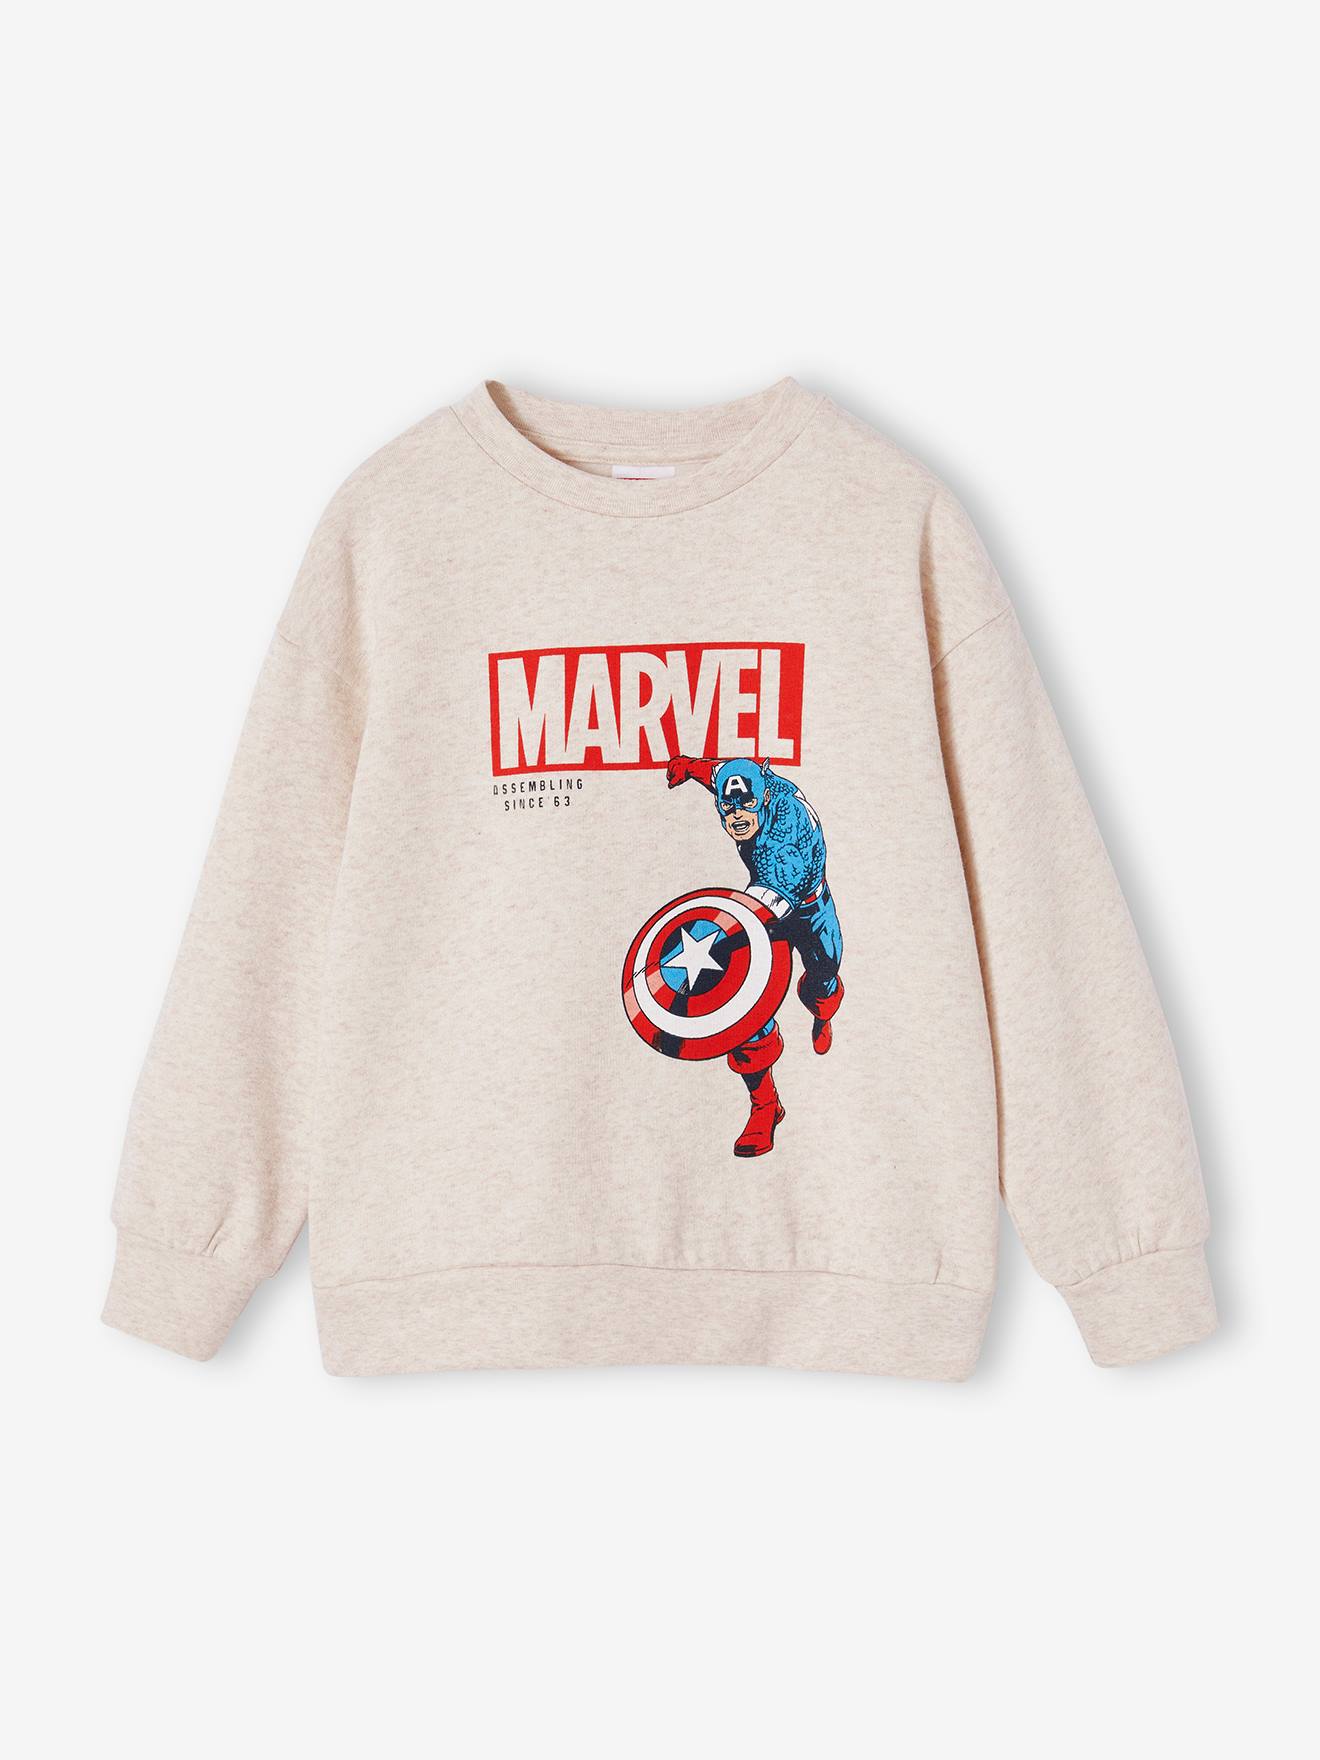 Jongenssweater Captain America Avengers Marvel® gemêleerd beige